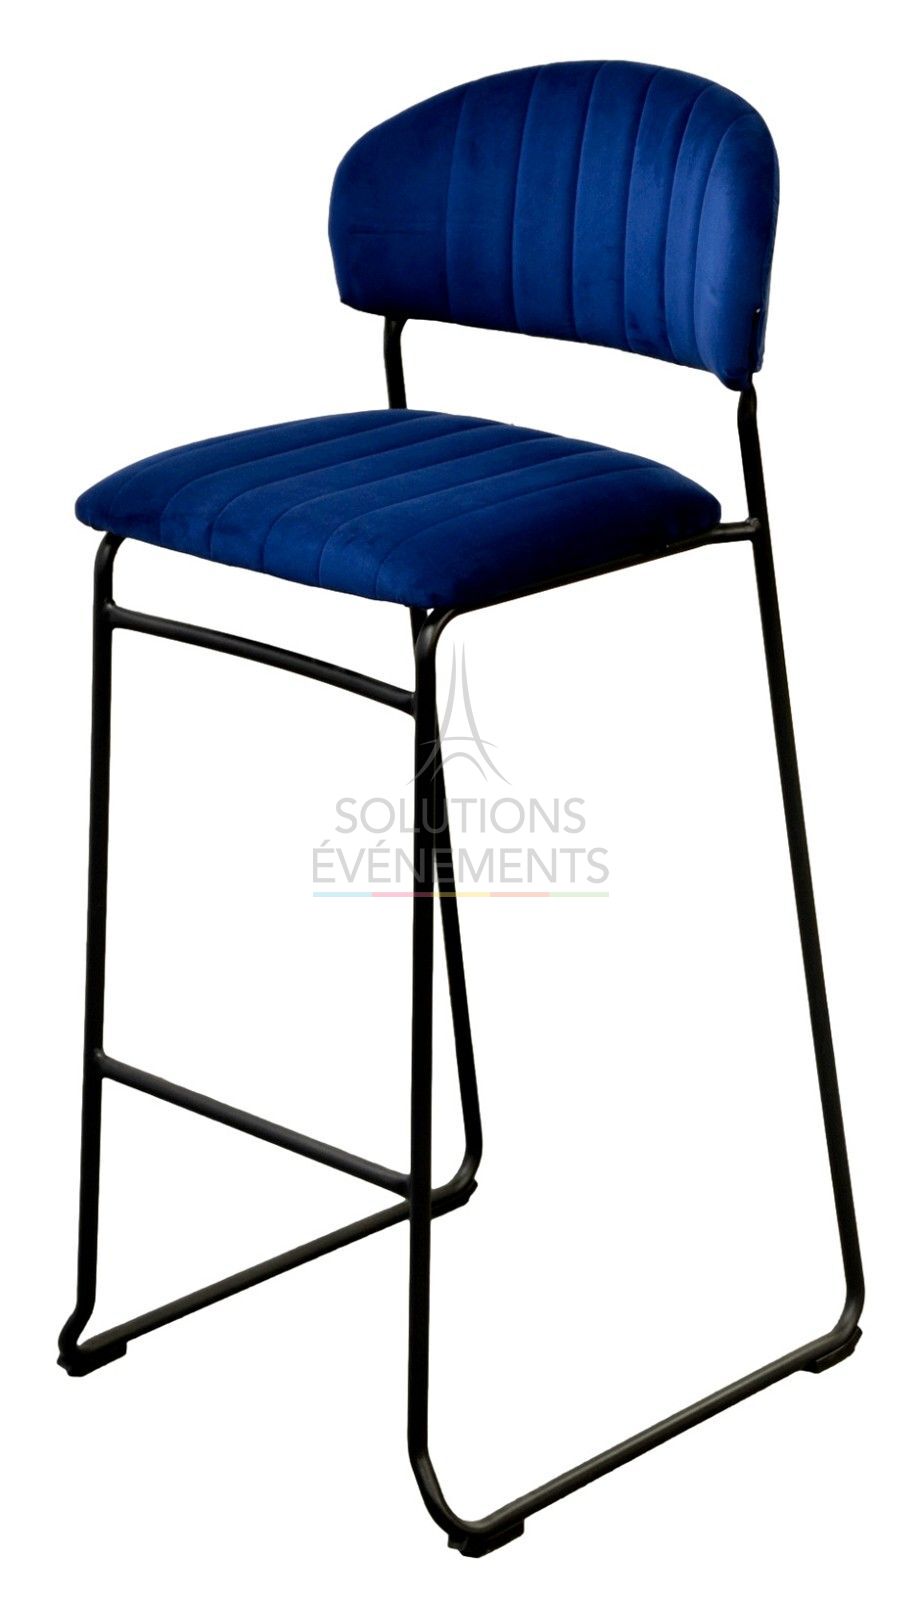 Location de chaise haute avec assise en velours bleu